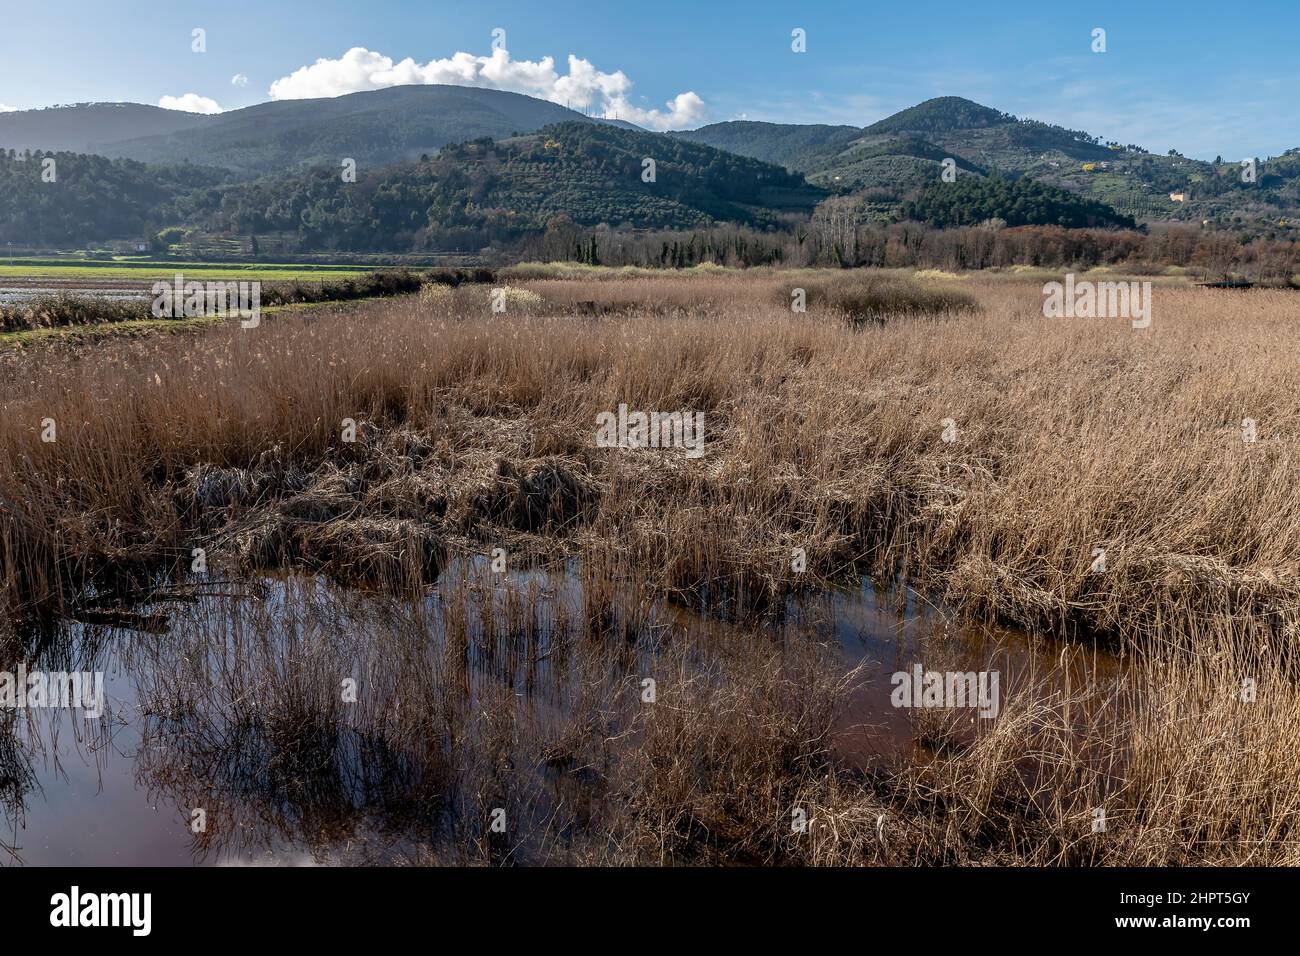 La riserva naturale Bosco di Tanali nelle paludi di Bientina, Pisa, Italia  Foto stock - Alamy